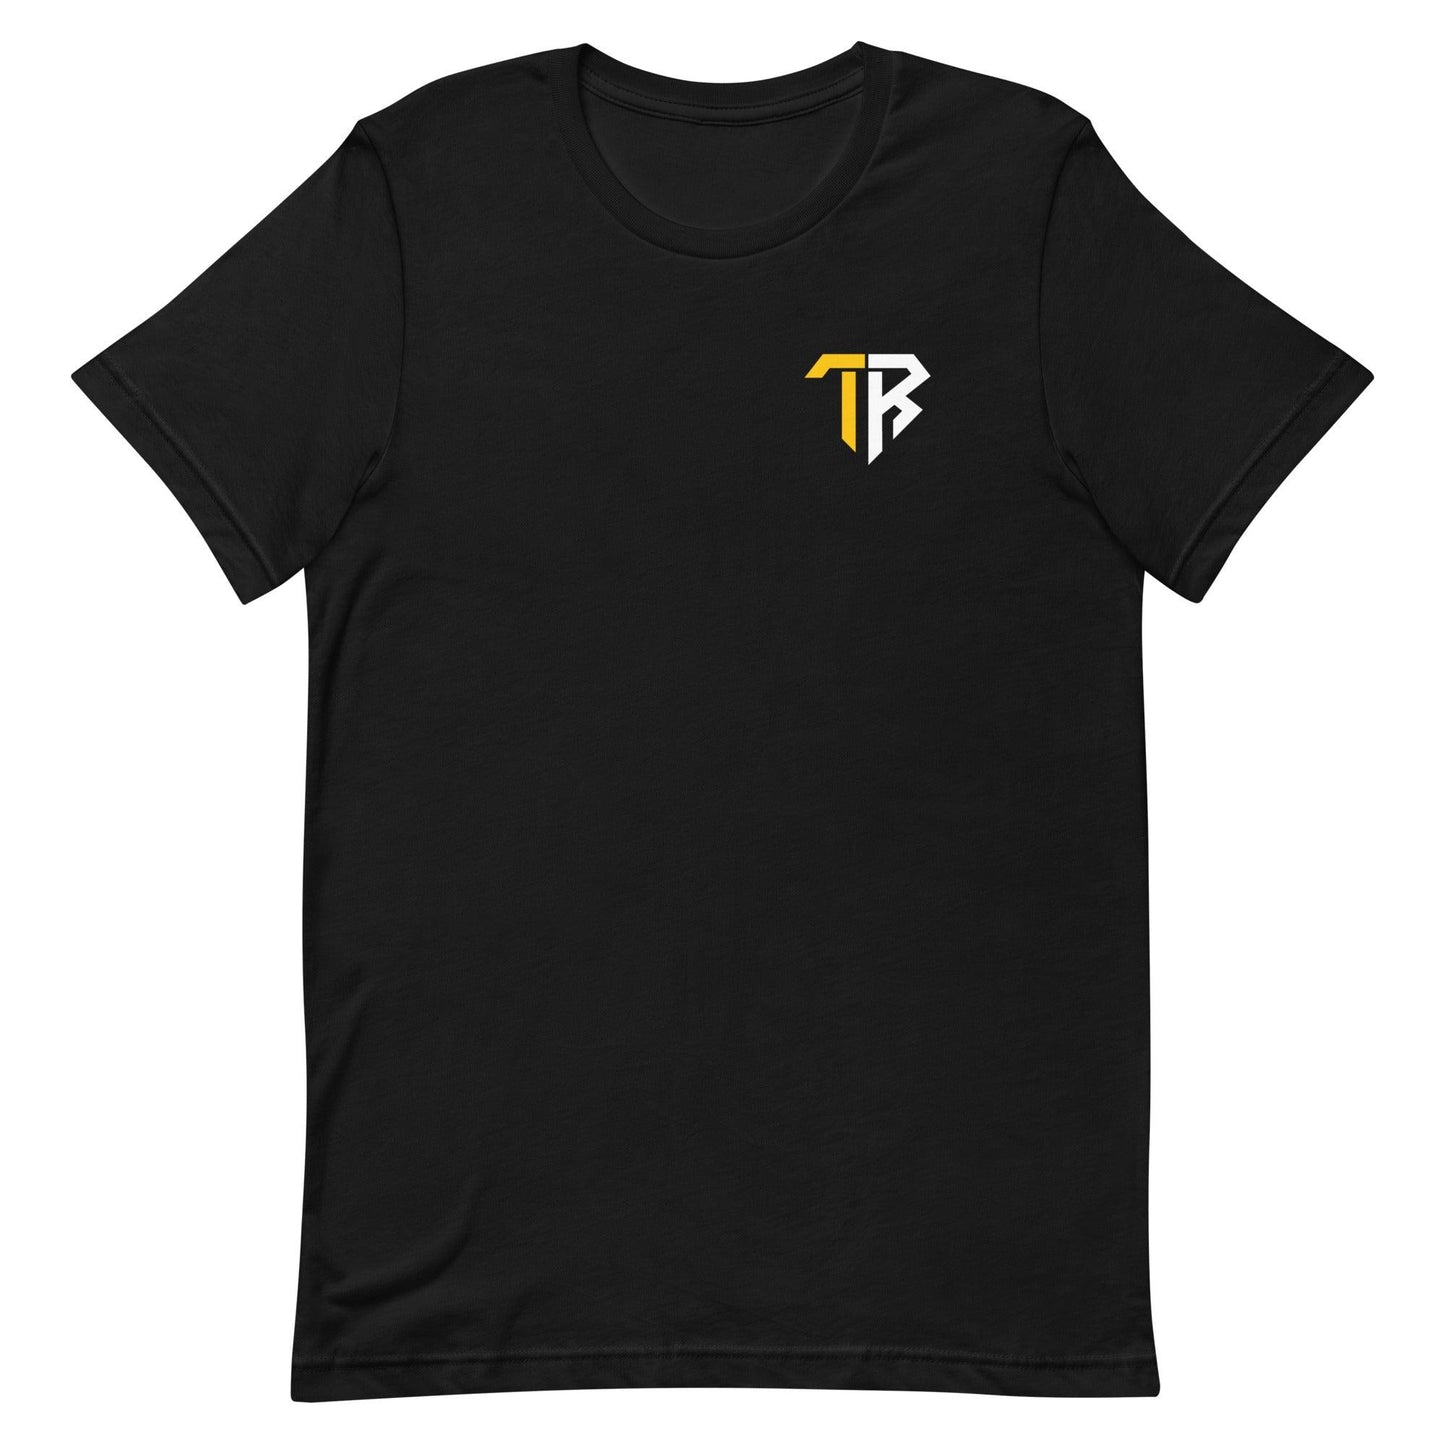 Taya Robinson “TR” t-shirt - Fan Arch